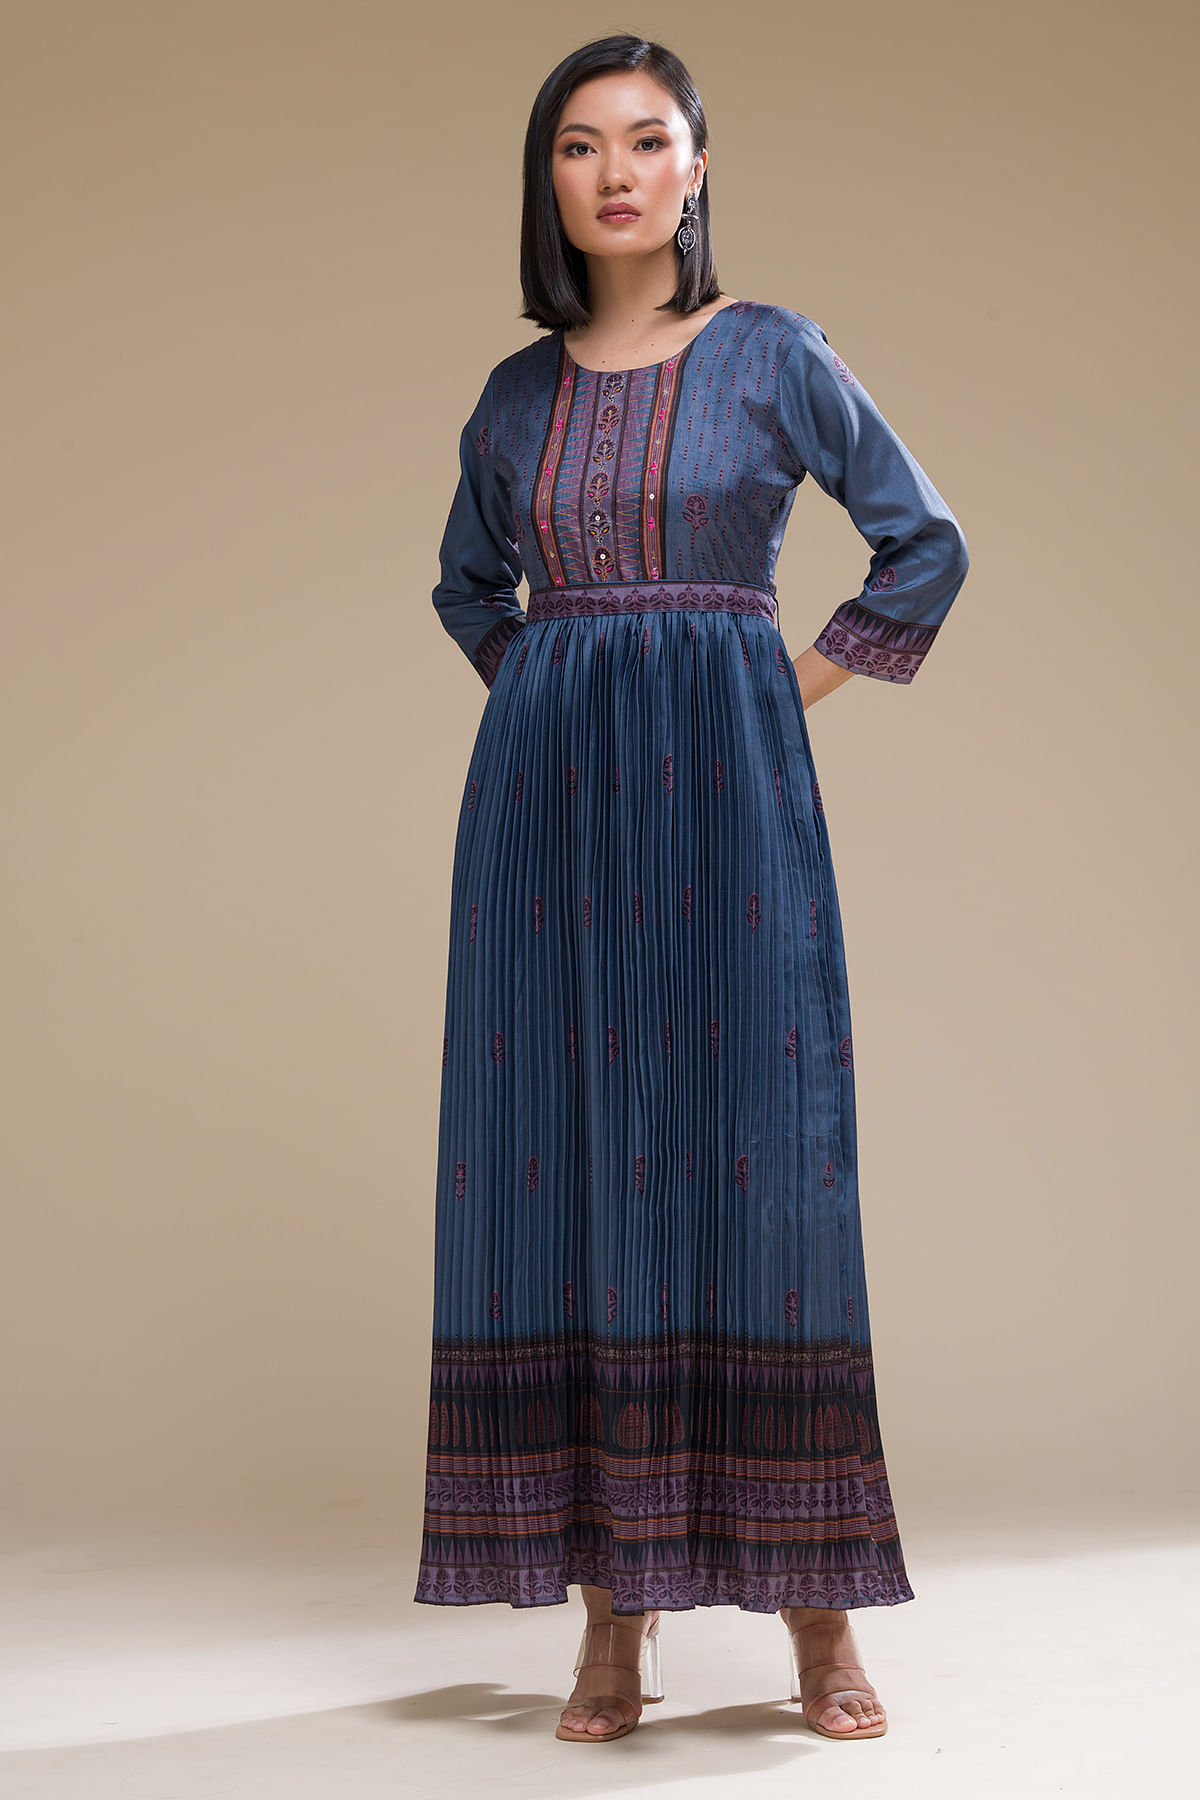 Boho Chic Style: Tunics & Kurtis Dresses for Women | Samyakk.com